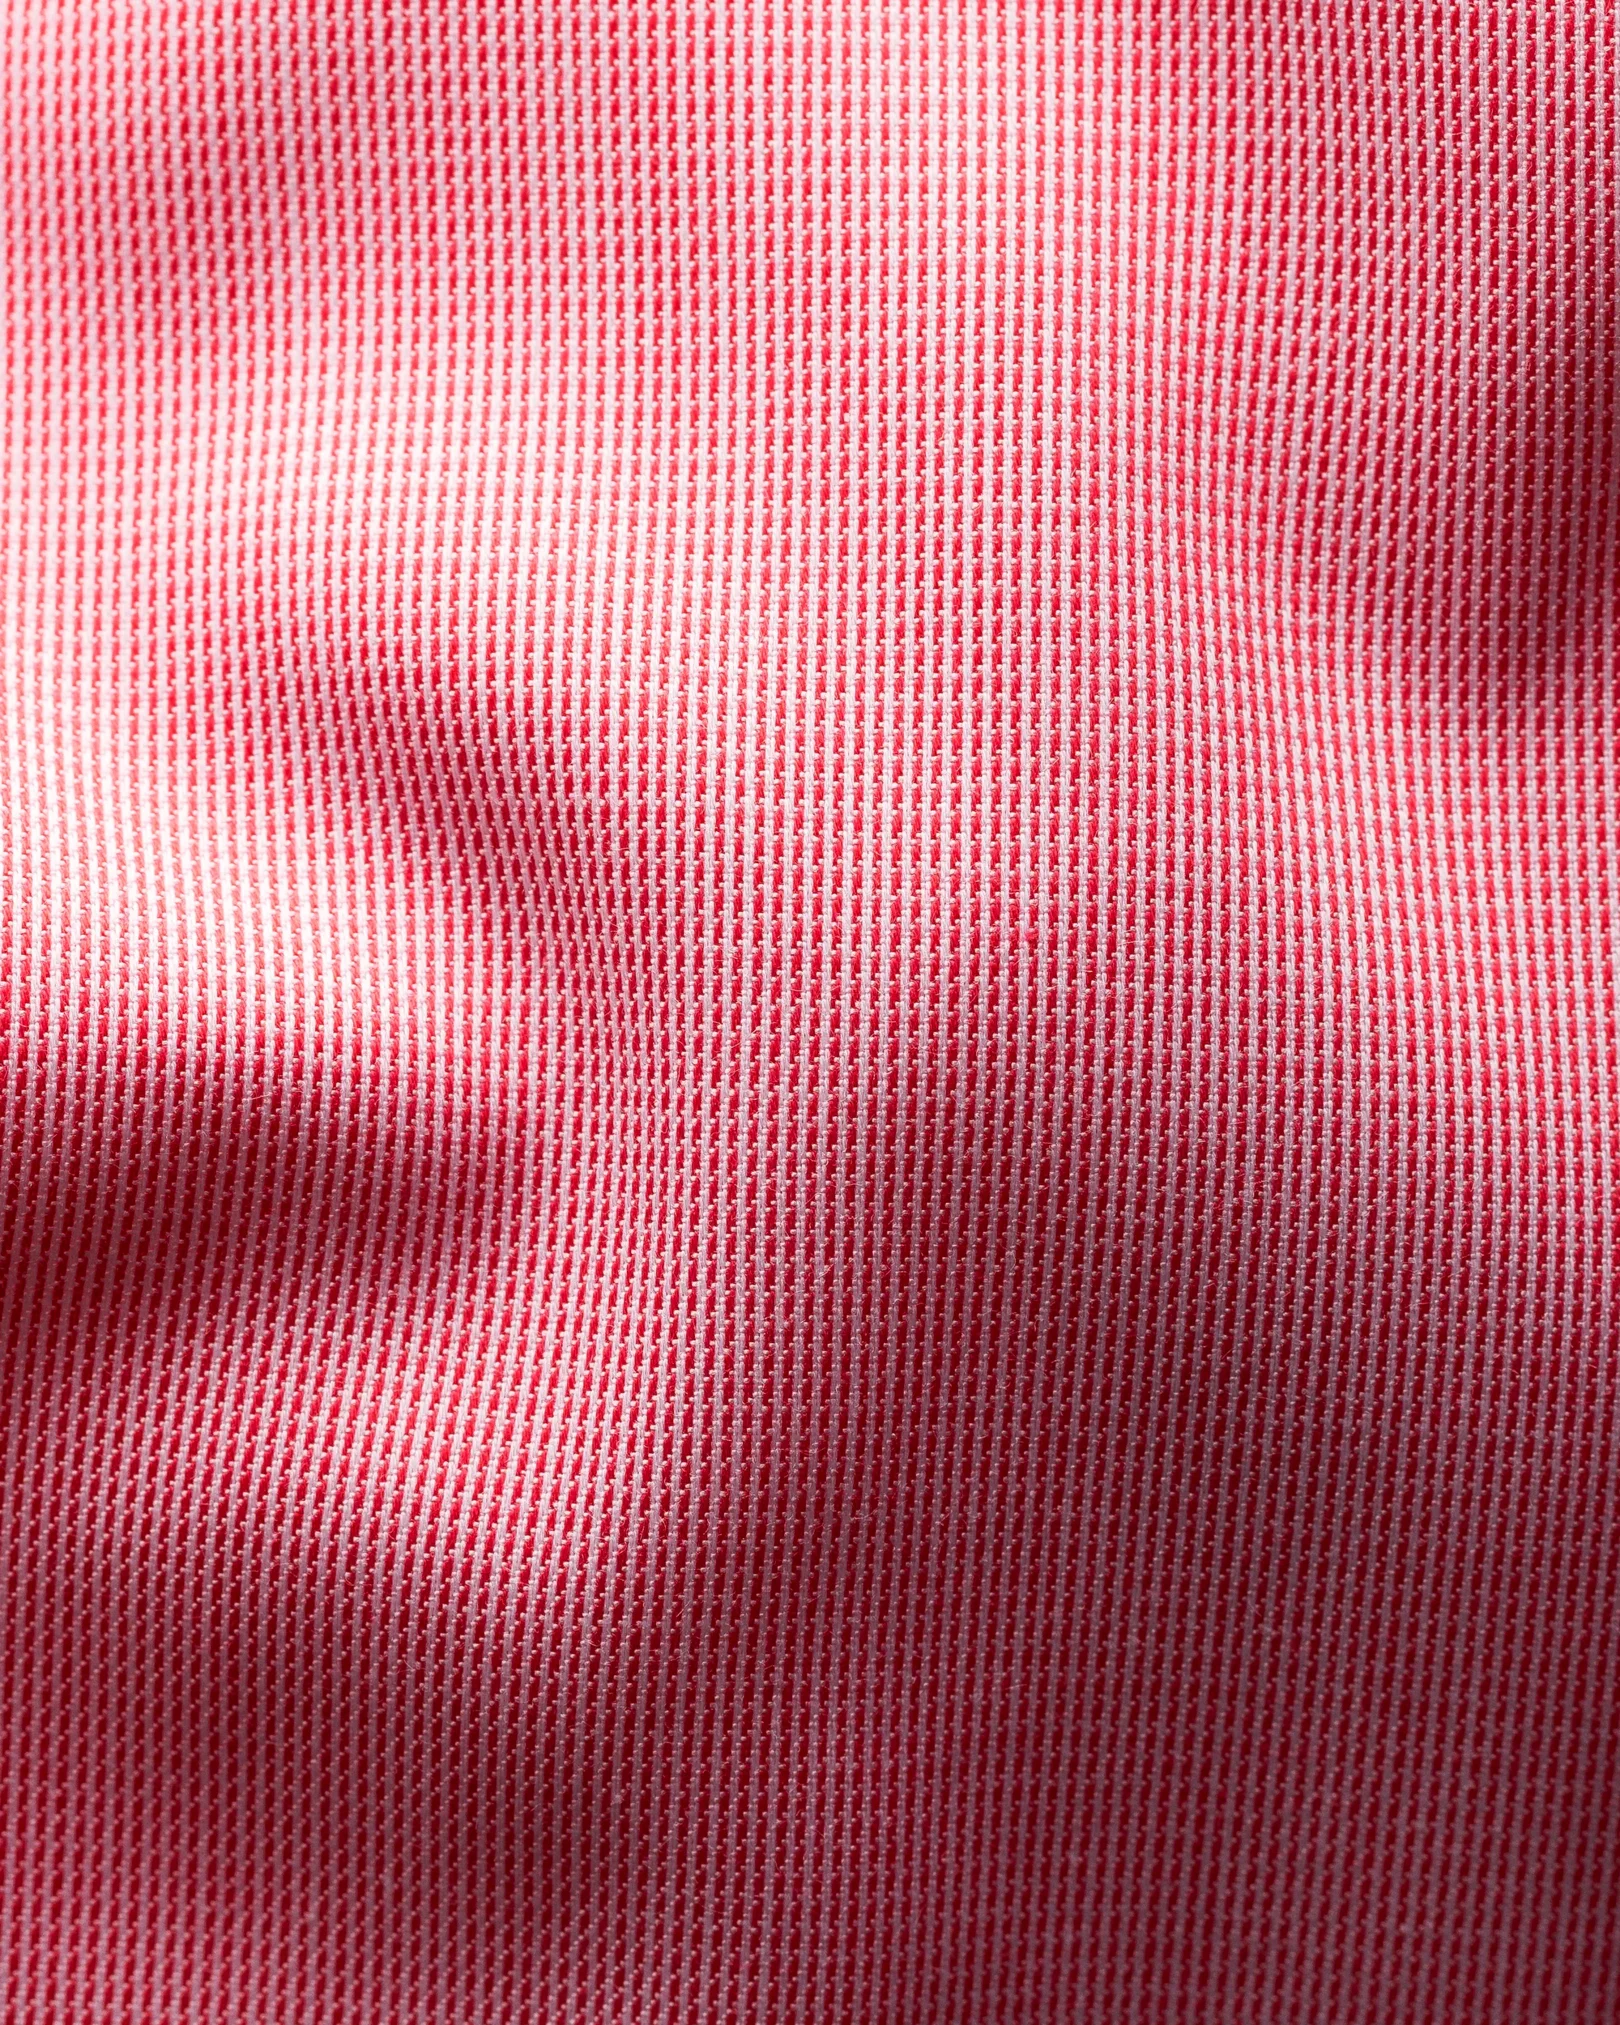 Eton - pastel red shirt extreme cut away